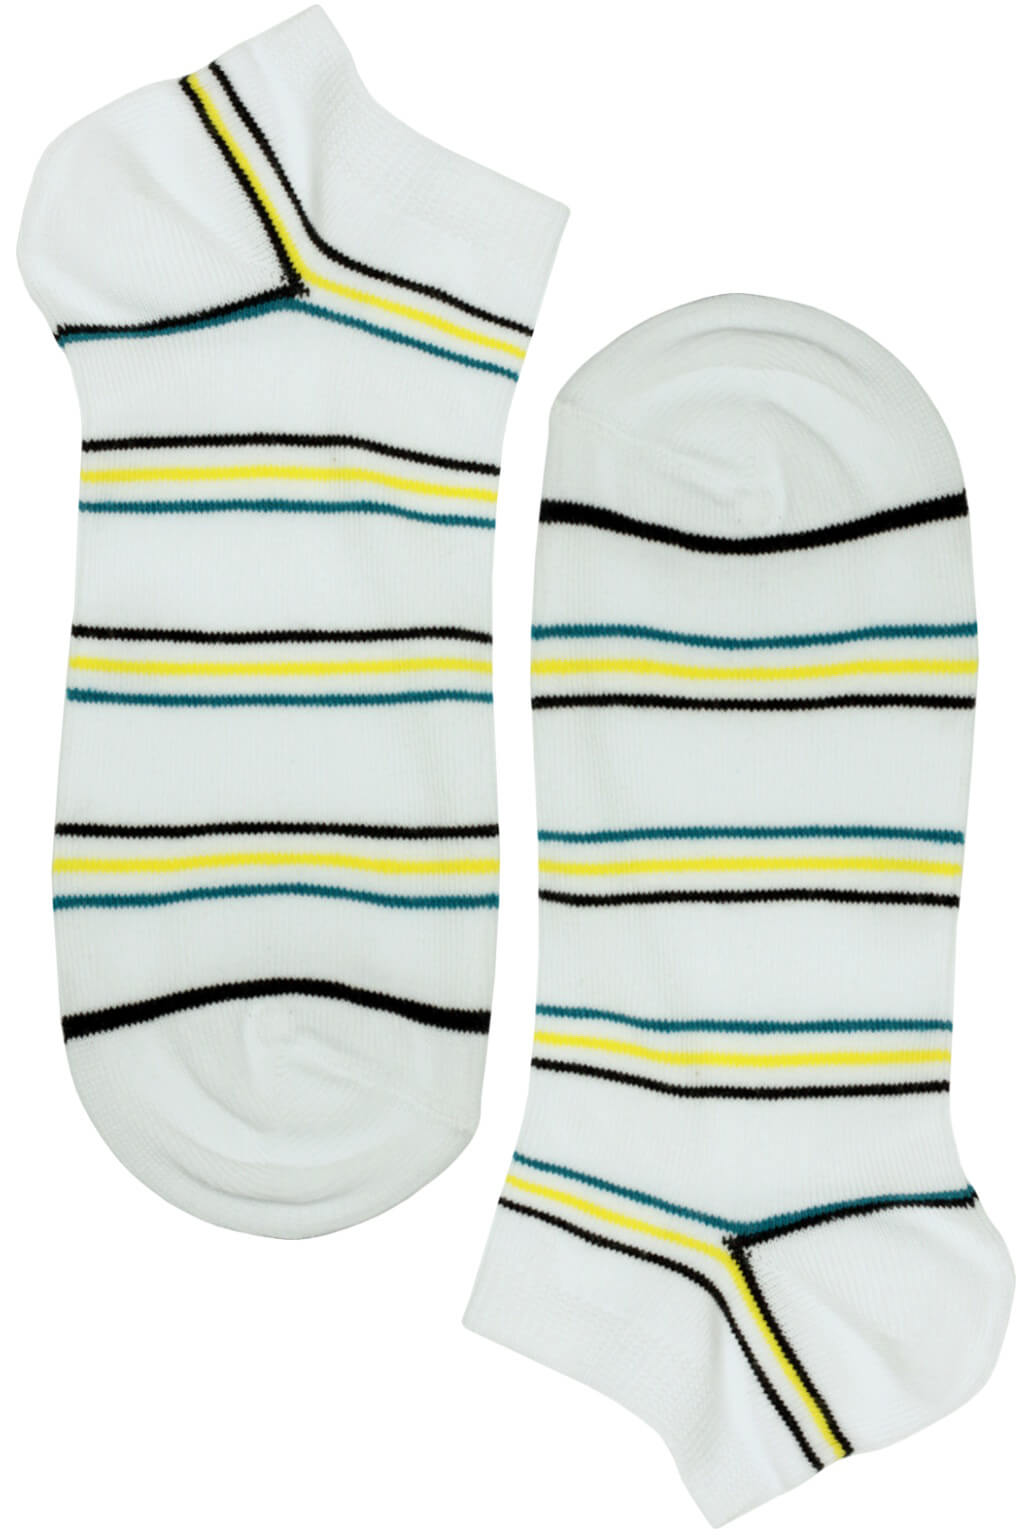 Bellinda ponožky - pánské nízké bavlněné s proužky 43-46 bílá